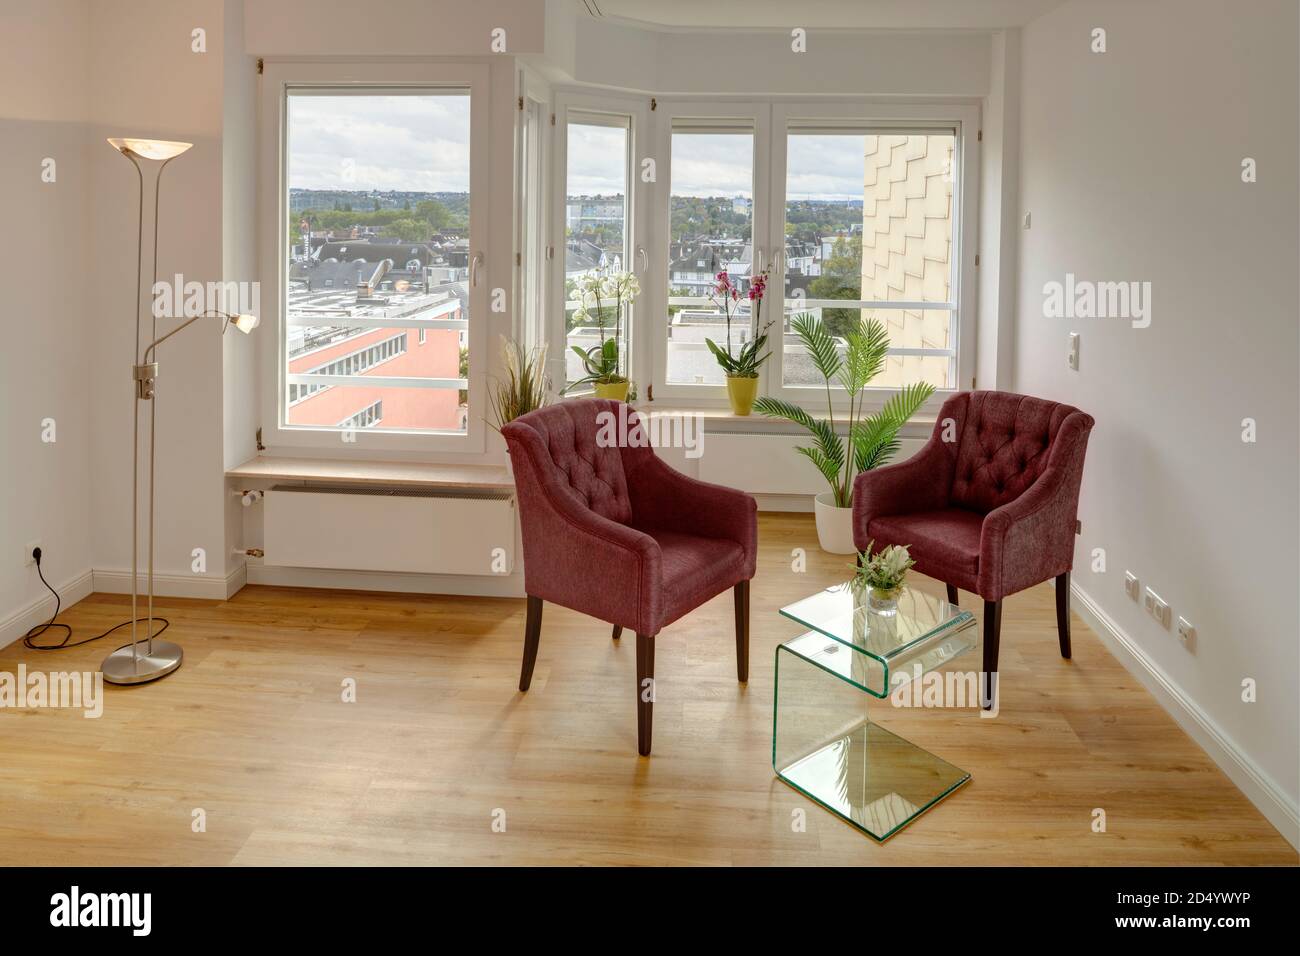 Appartamento mit Blick auf eine urbane Umgebung. In Front Eines grossen Fensters befindet sich eine 2er Sitzgruppe bestehend aus zwei roten Sesseln und e Foto Stock